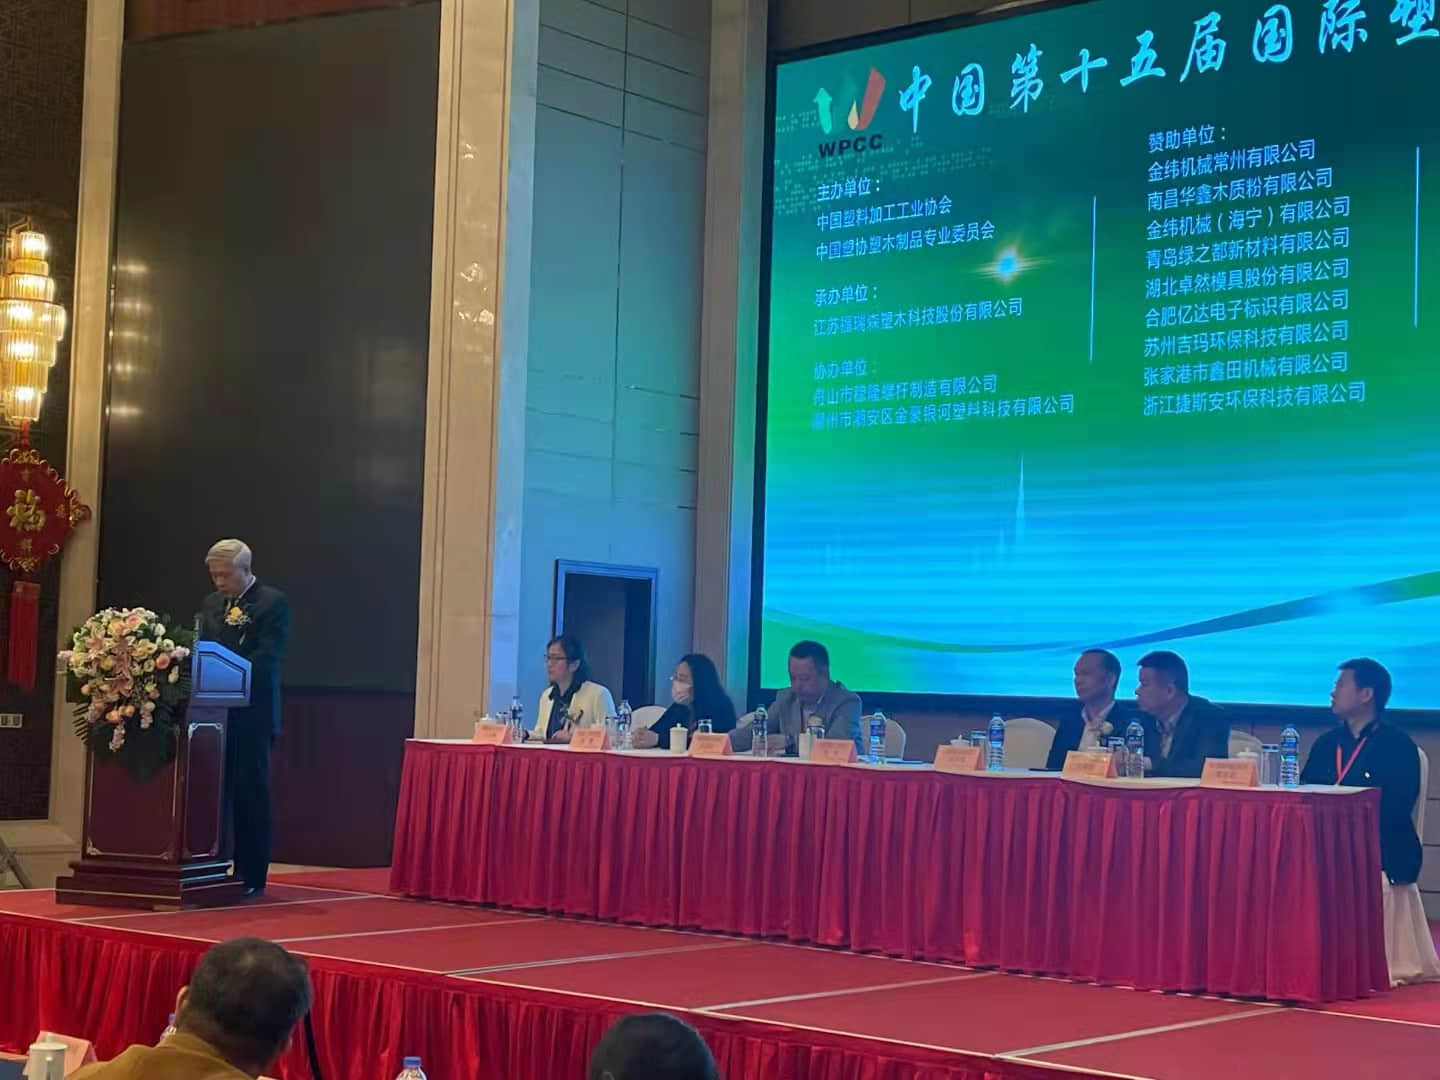 弘之木受邀参加中国第十五届国际塑木高峰论坛